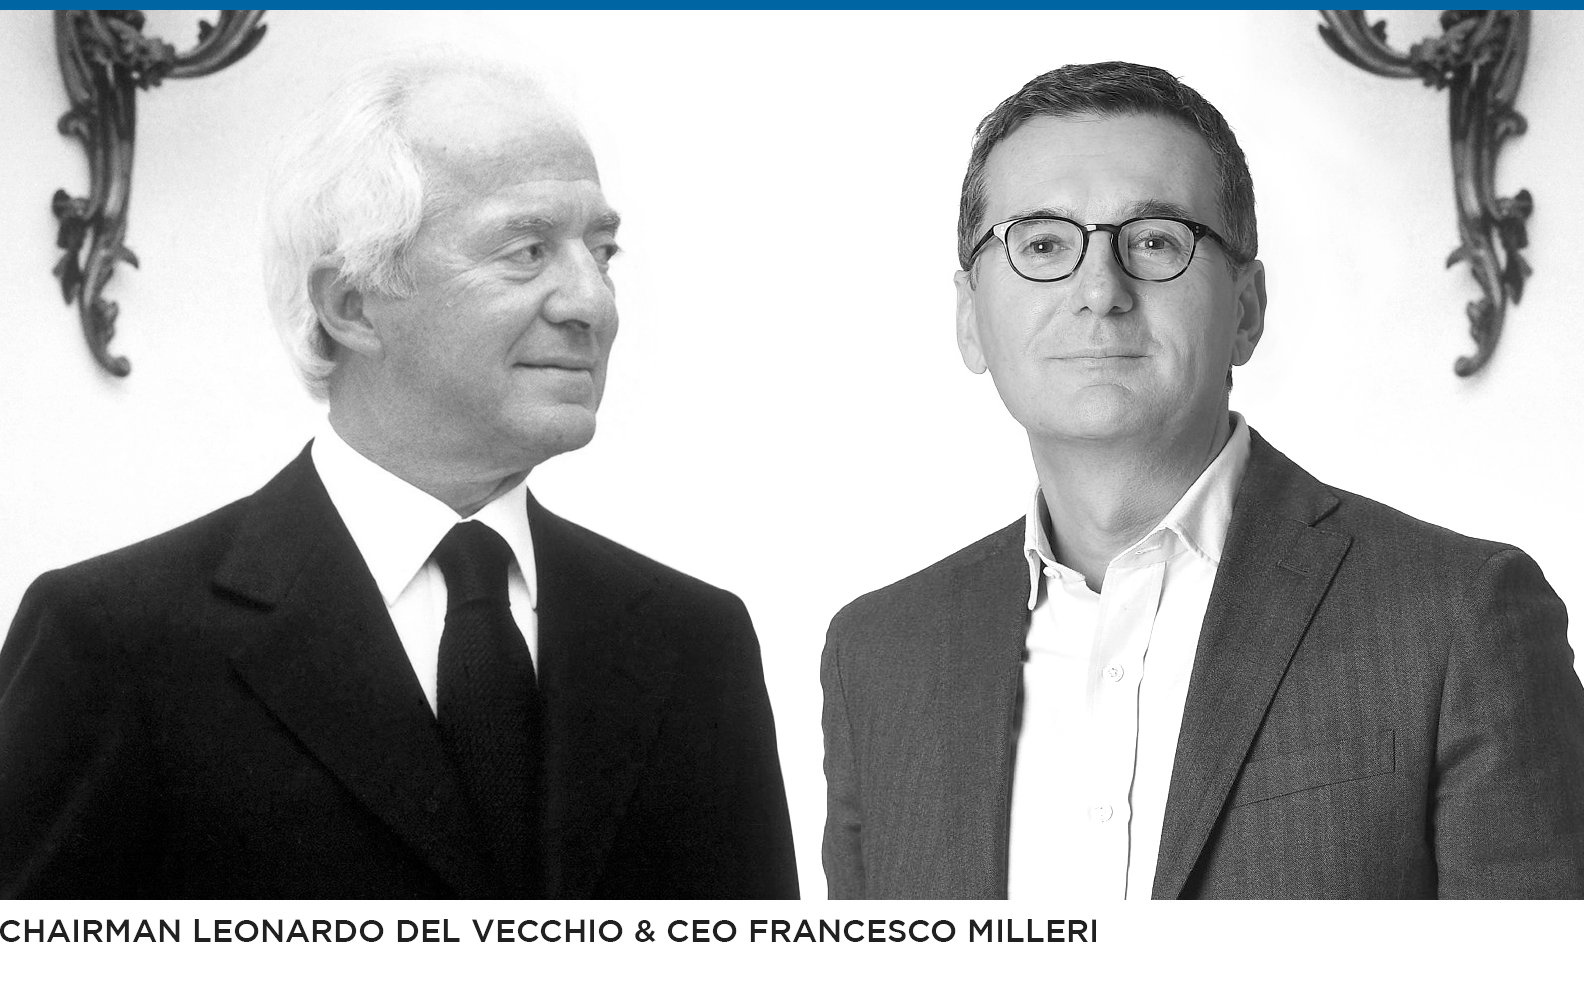 EssiliorLuxottica Chairman Leonardo Del Vecchio and CEO Francesco Milleri